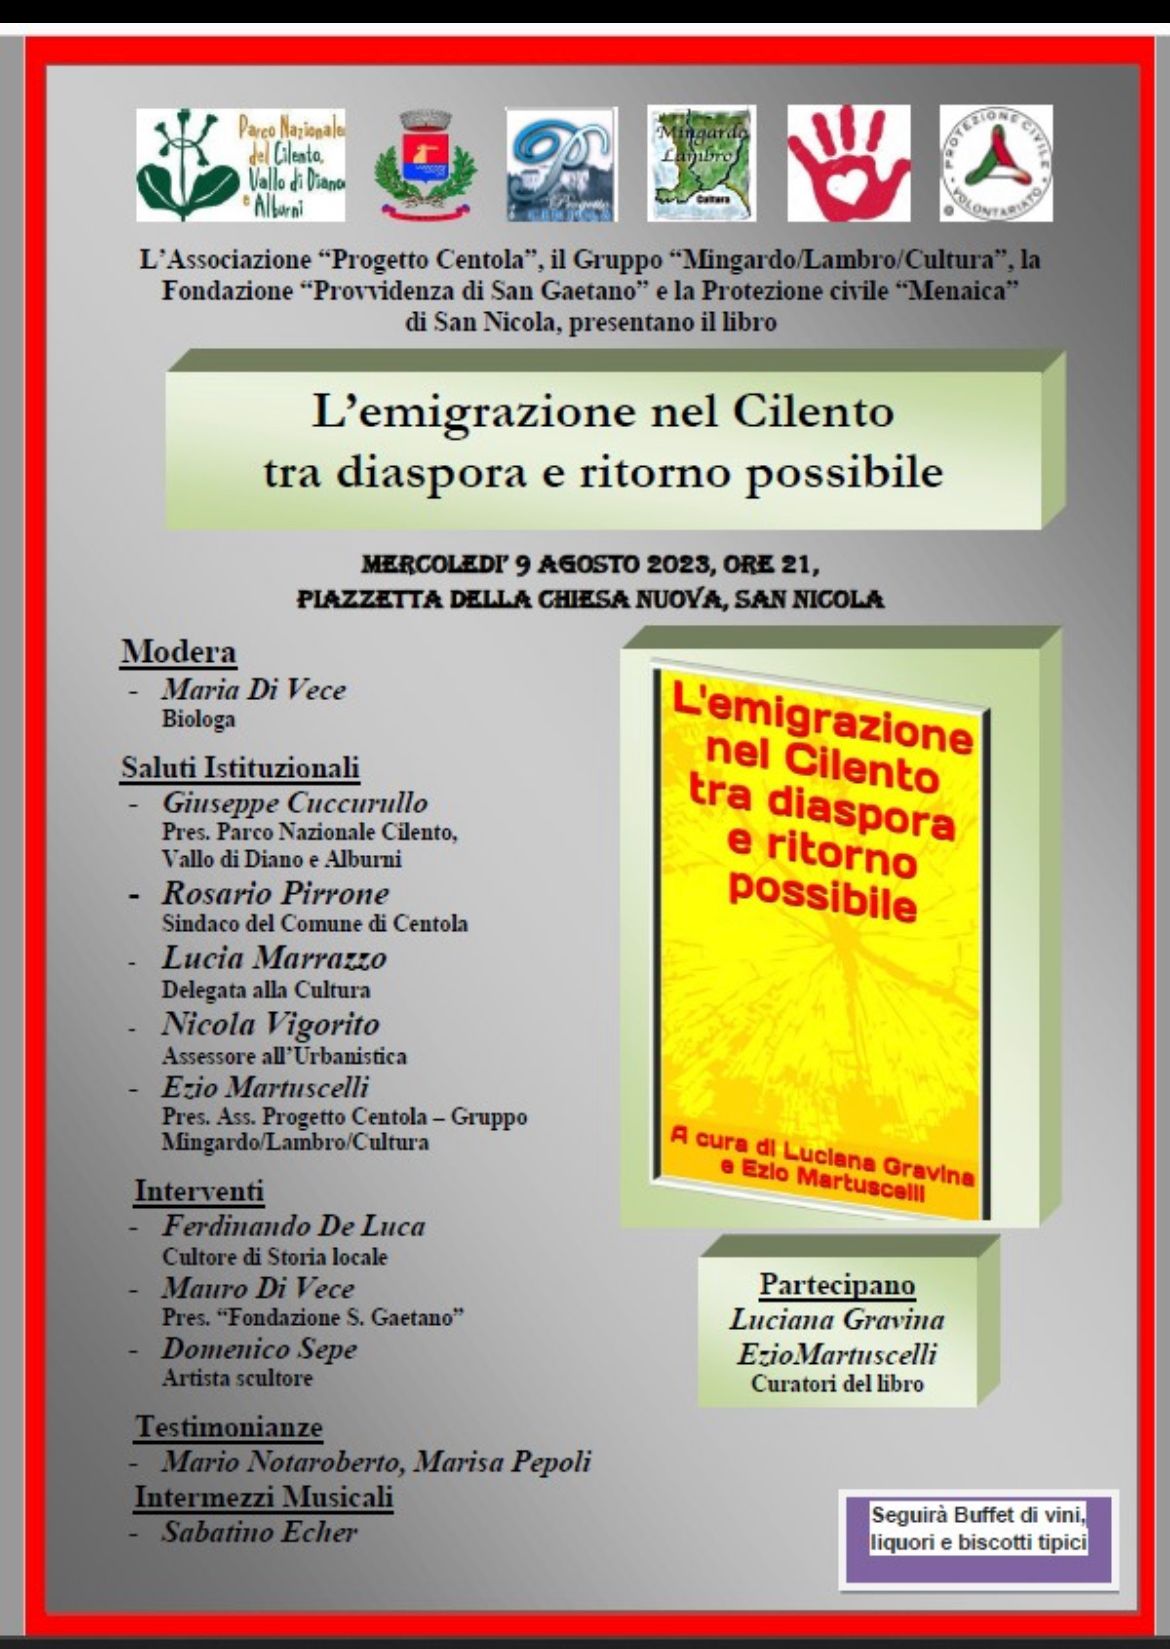 L’emigrazione nel Cilento, a San Nicola di Centola la presentazione del libro sulla storia tra diaspora e speranza